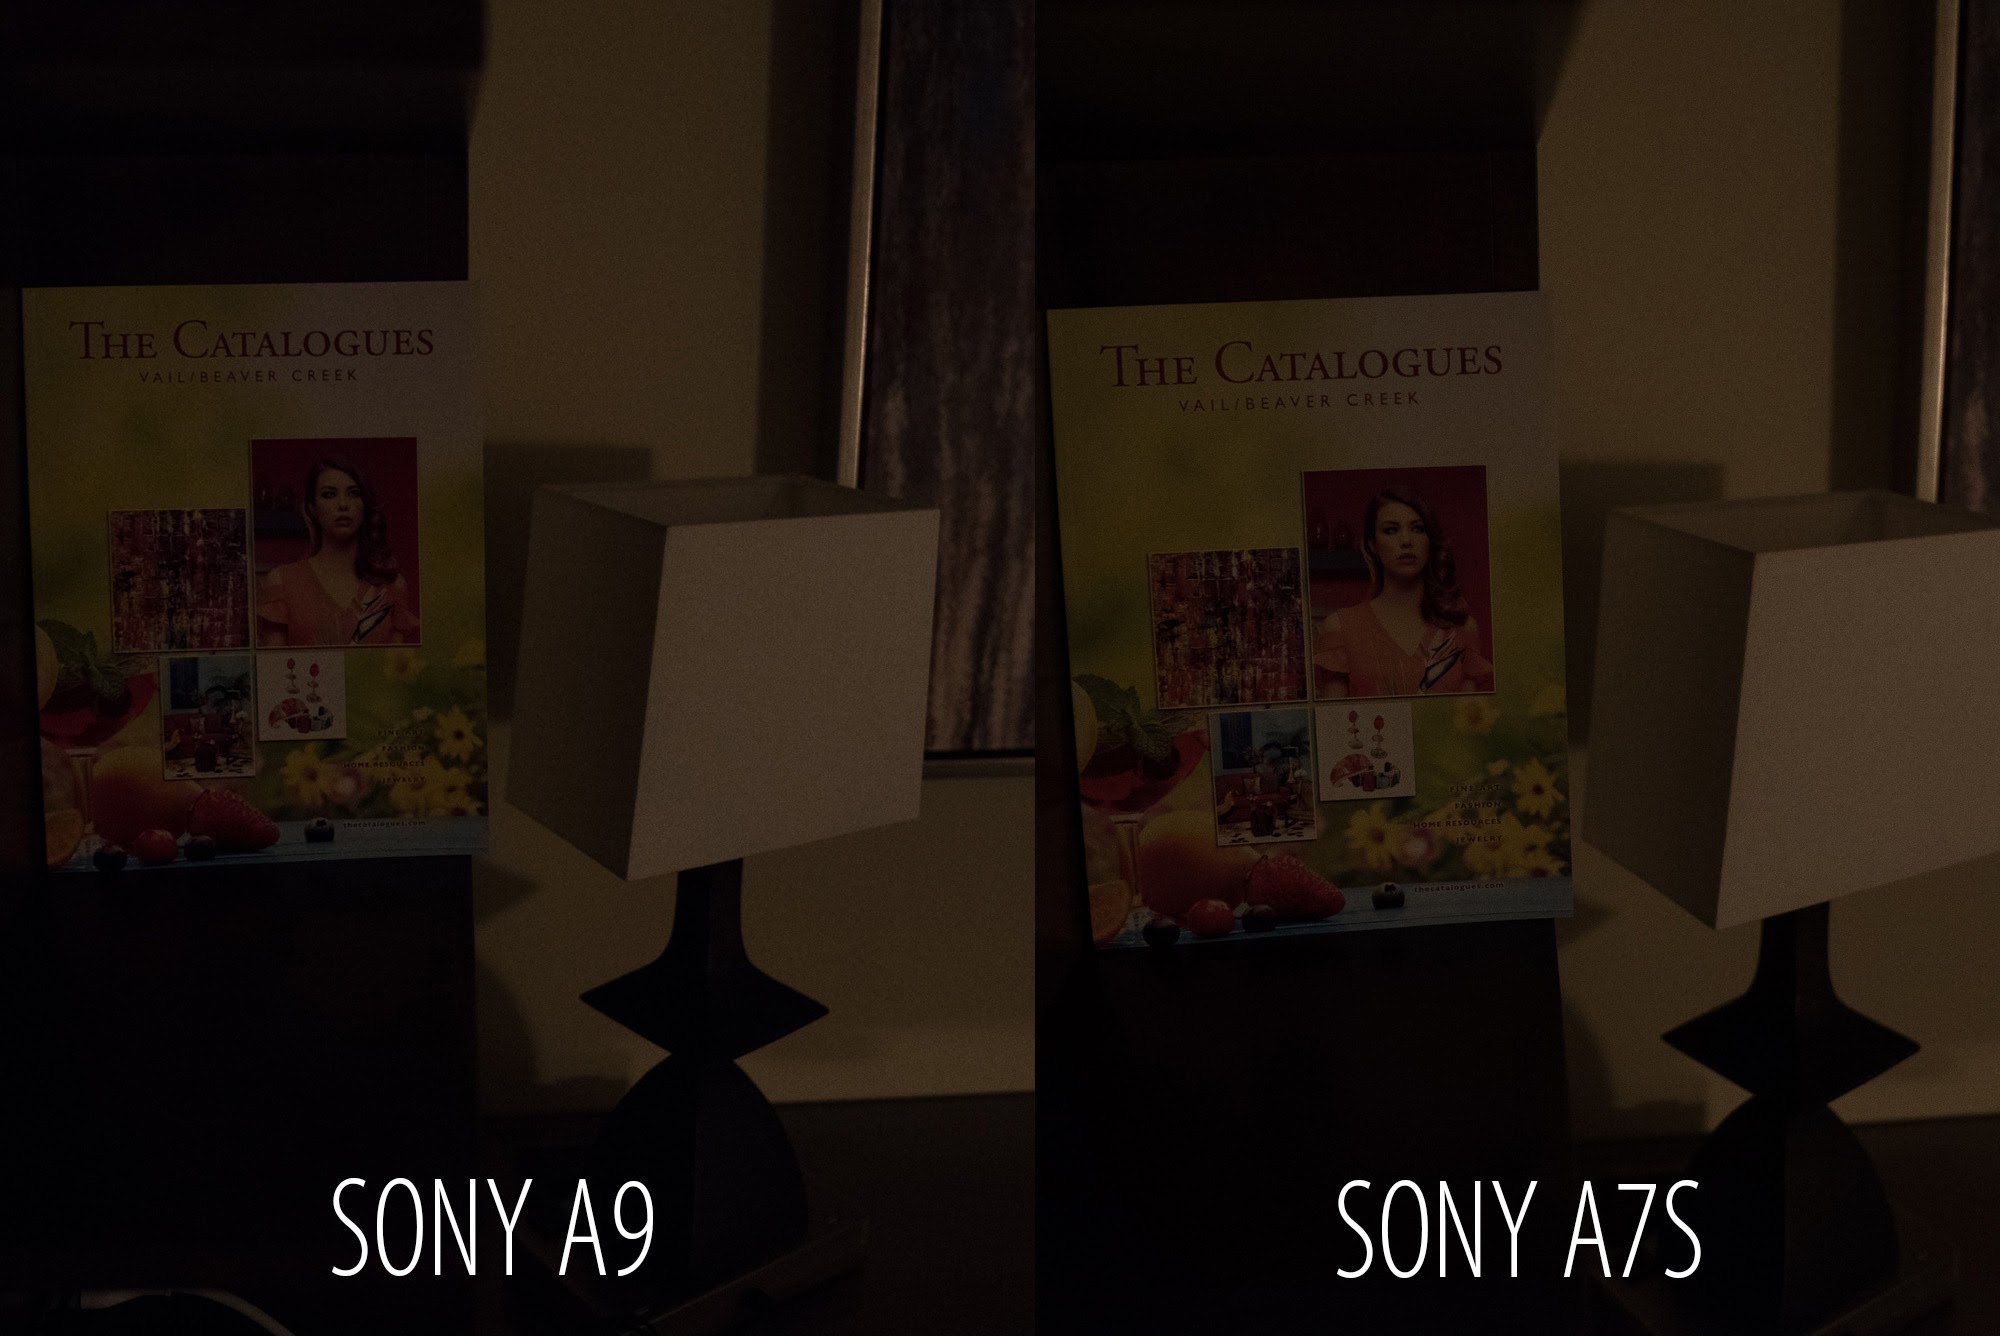 Sony A9 Camera: The Gizmodo Review